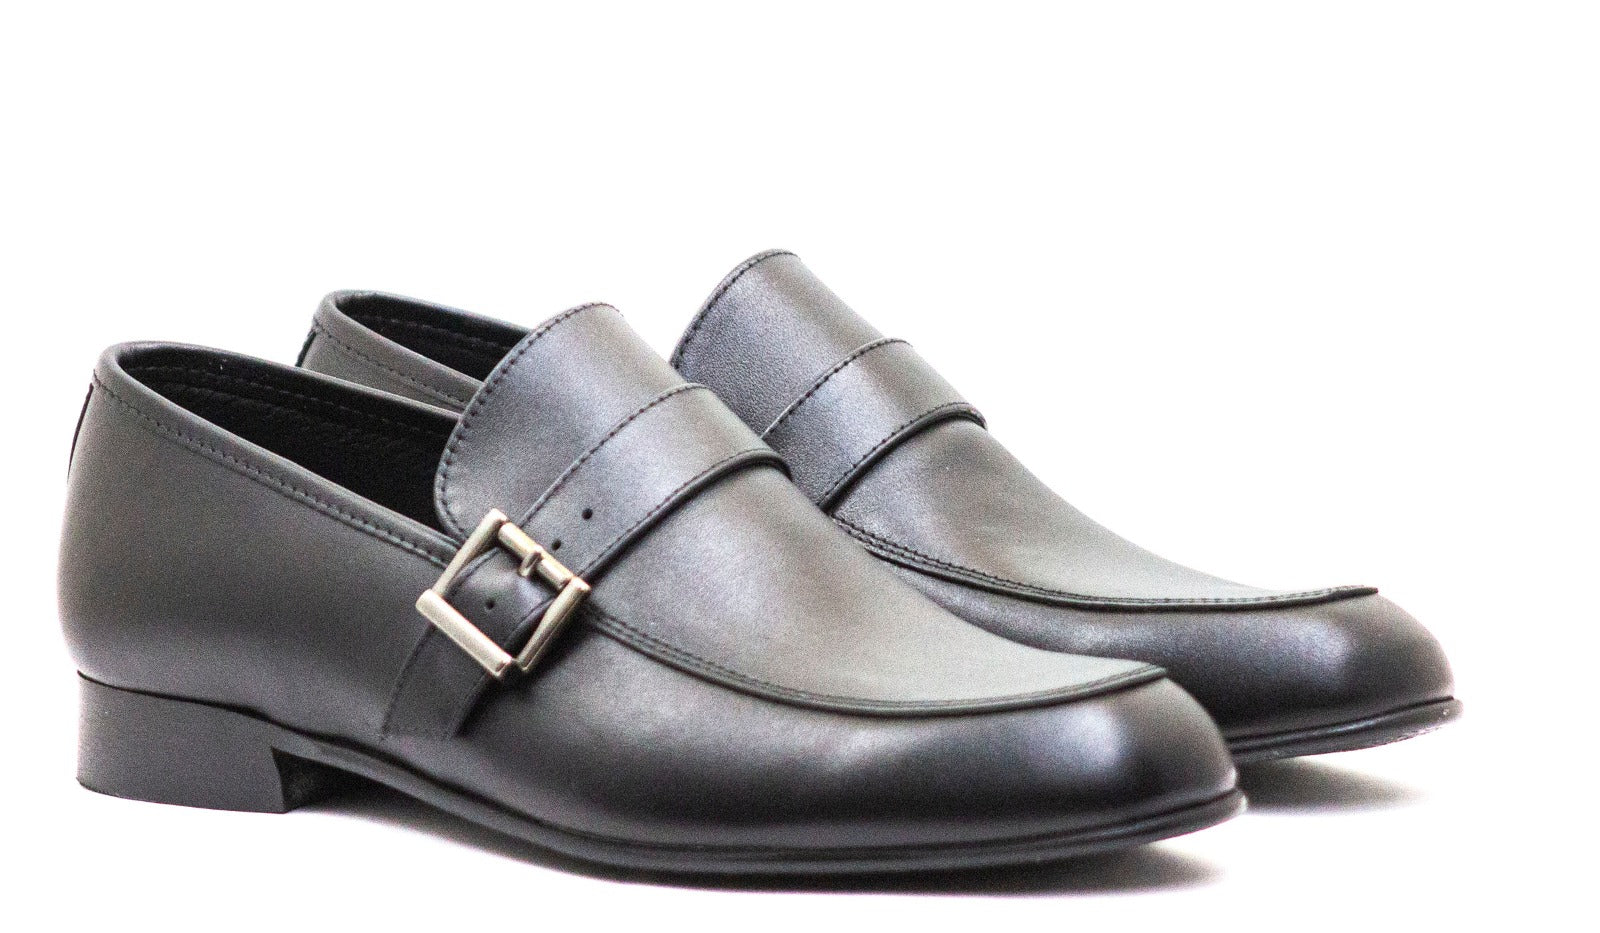 Andanines Boys Black Leather Slip On Loafer Dress Shoe C78320